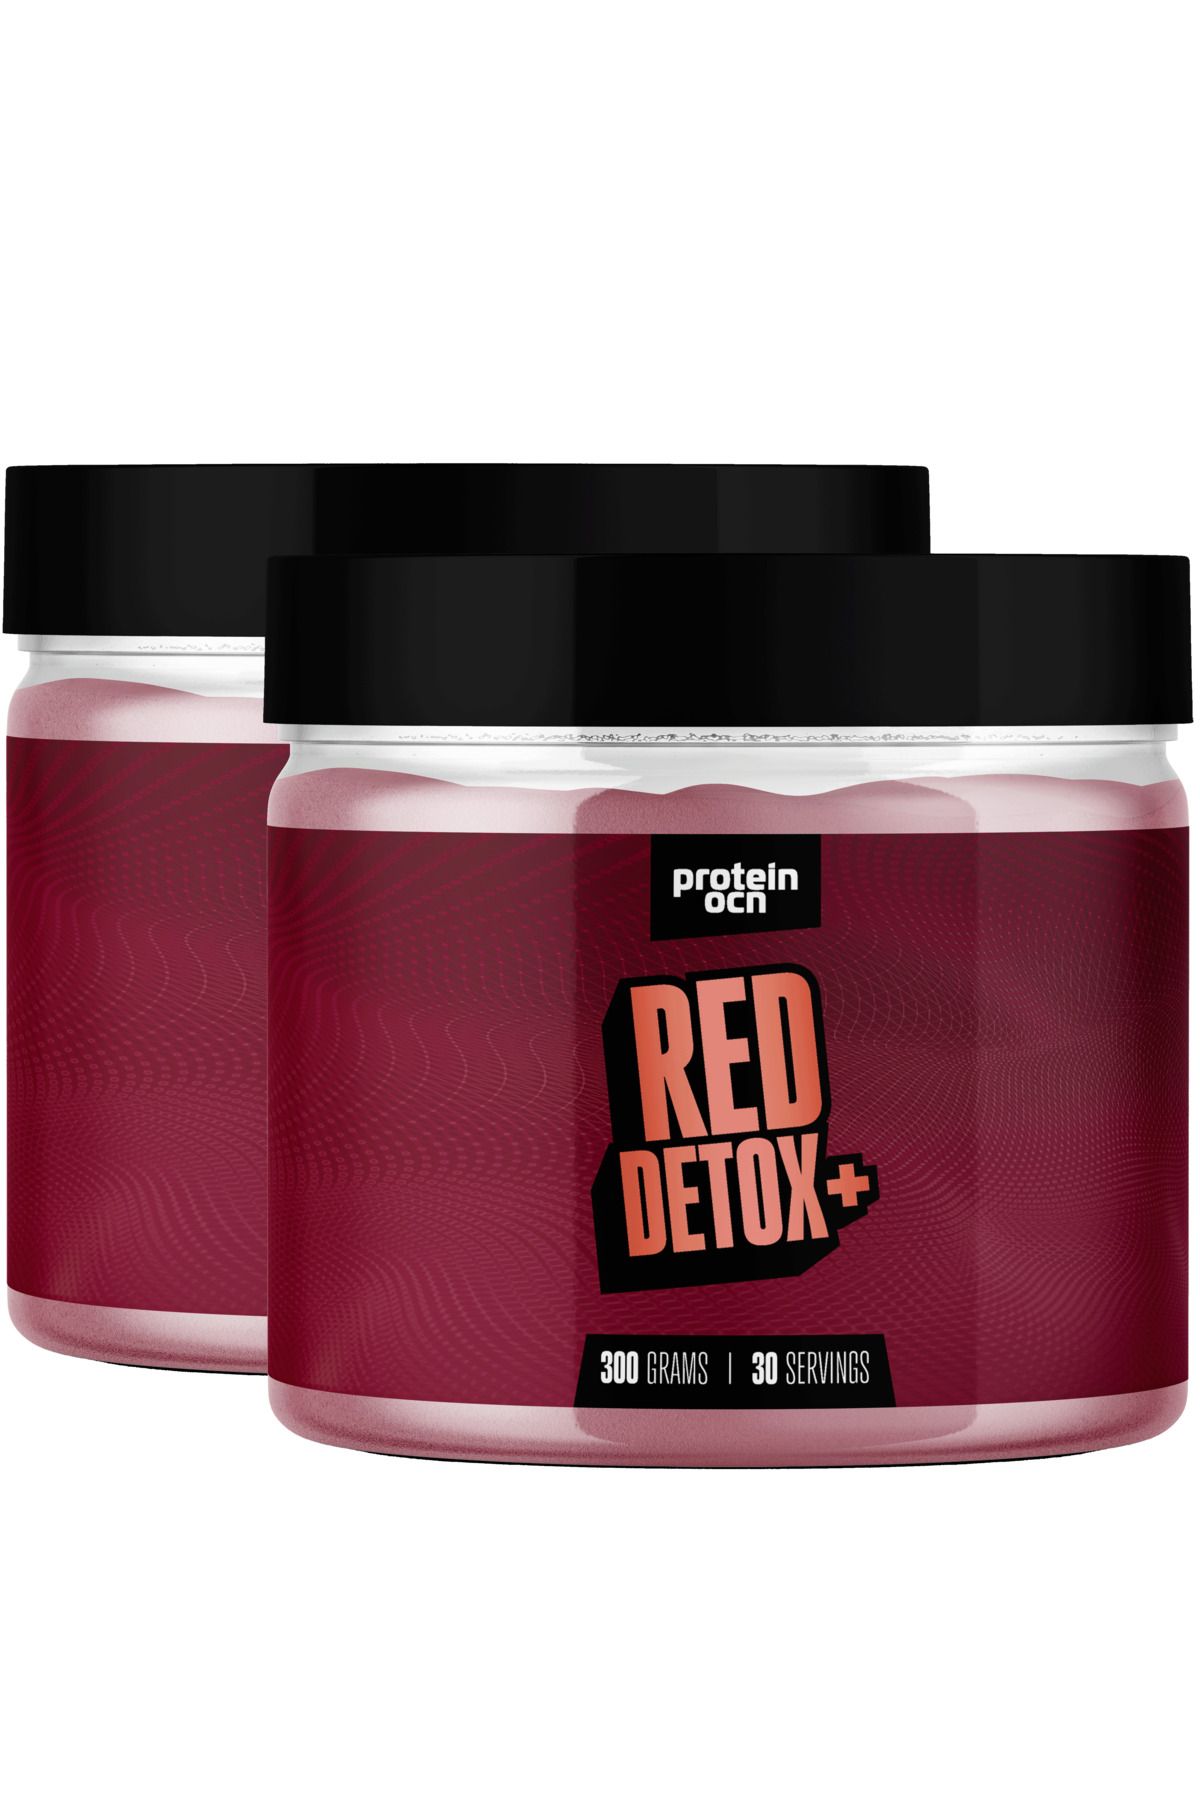 Proteinocean Red Detox+™ - 60 Servis -  300g X 2 Adet